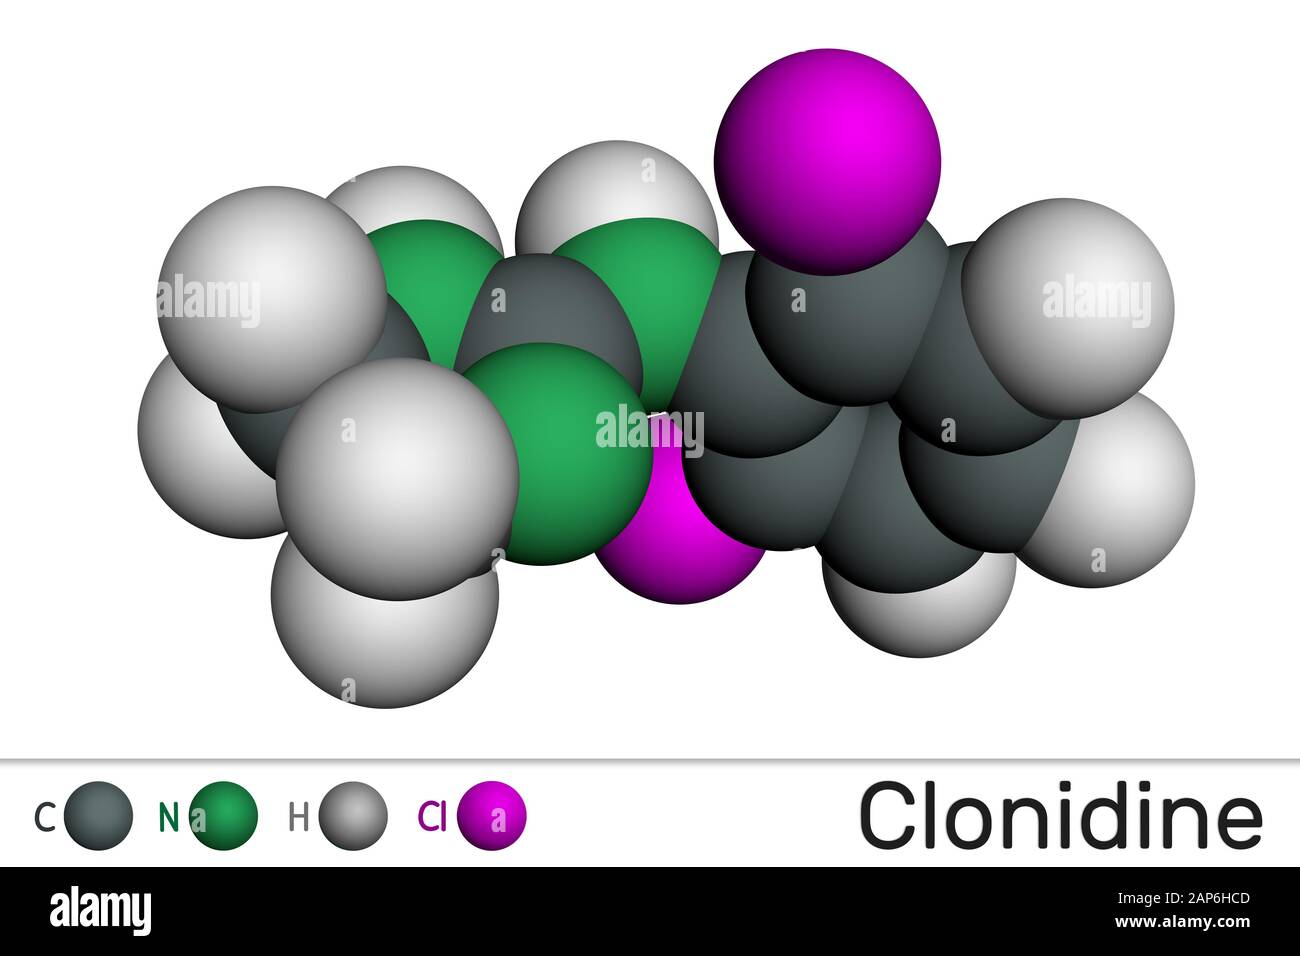 Clonidin-Molekül. Es ist nützlich für die Behandlung von Bluthochdruck, starken Schmerzen und ADHS. Molekularmodell. 3D-Rendering Stockfoto